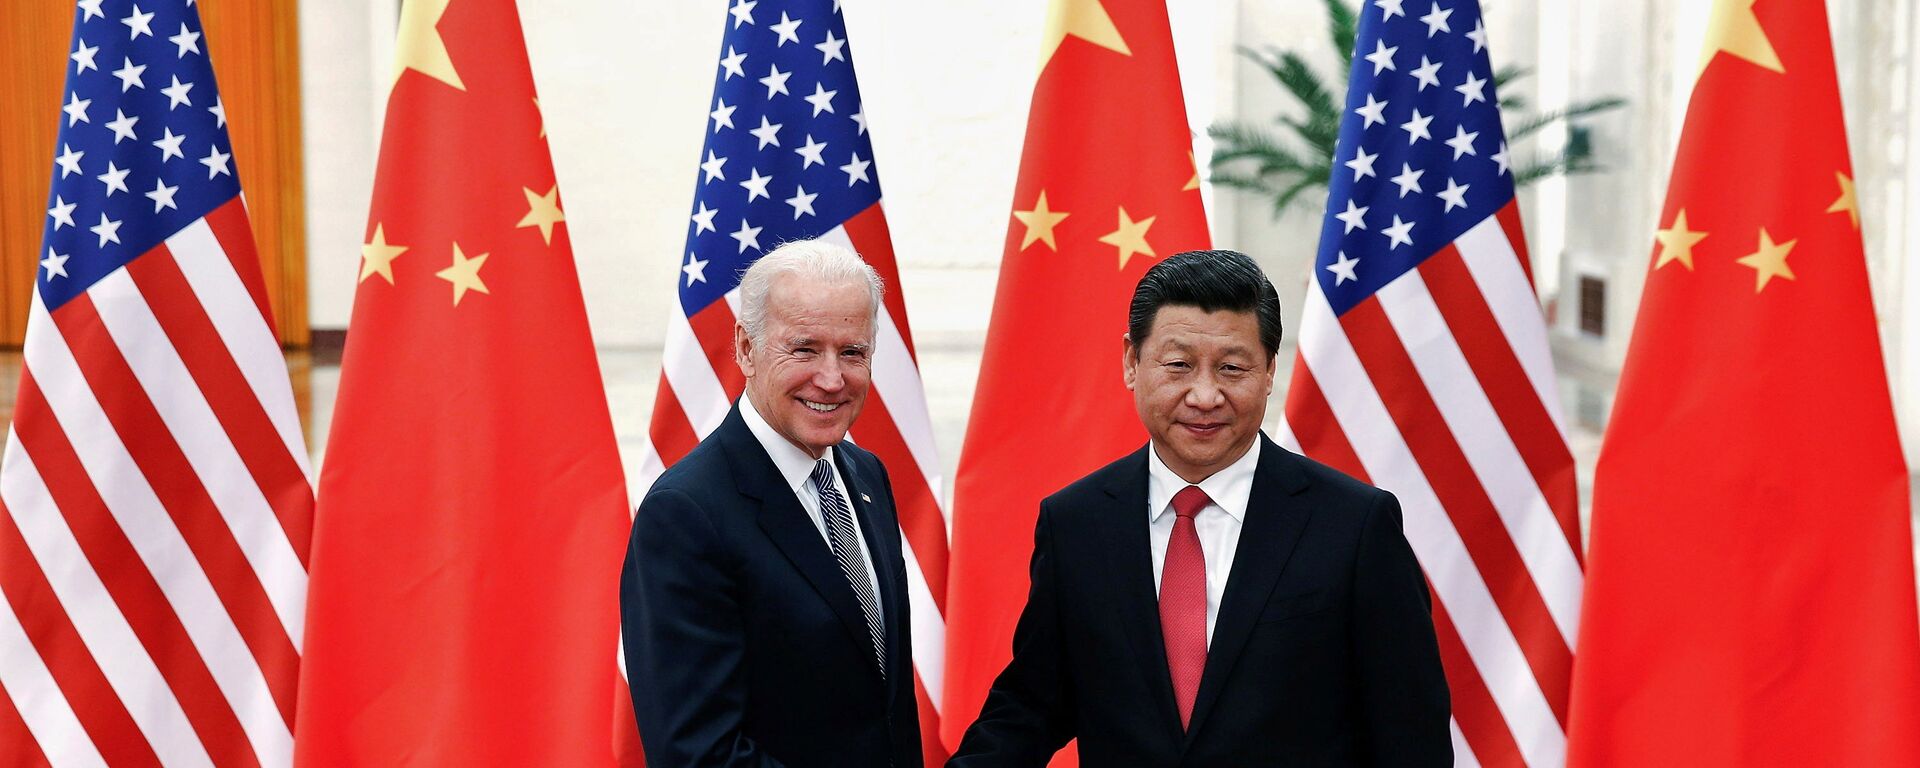 Chủ tịch Cộng hòa Nhân dân Trung Hoa Tập Cận Bình và Phó Tổng thống Joe Biden tại Bắc Kinh, 2013 - Sputnik Việt Nam, 1920, 29.04.2021